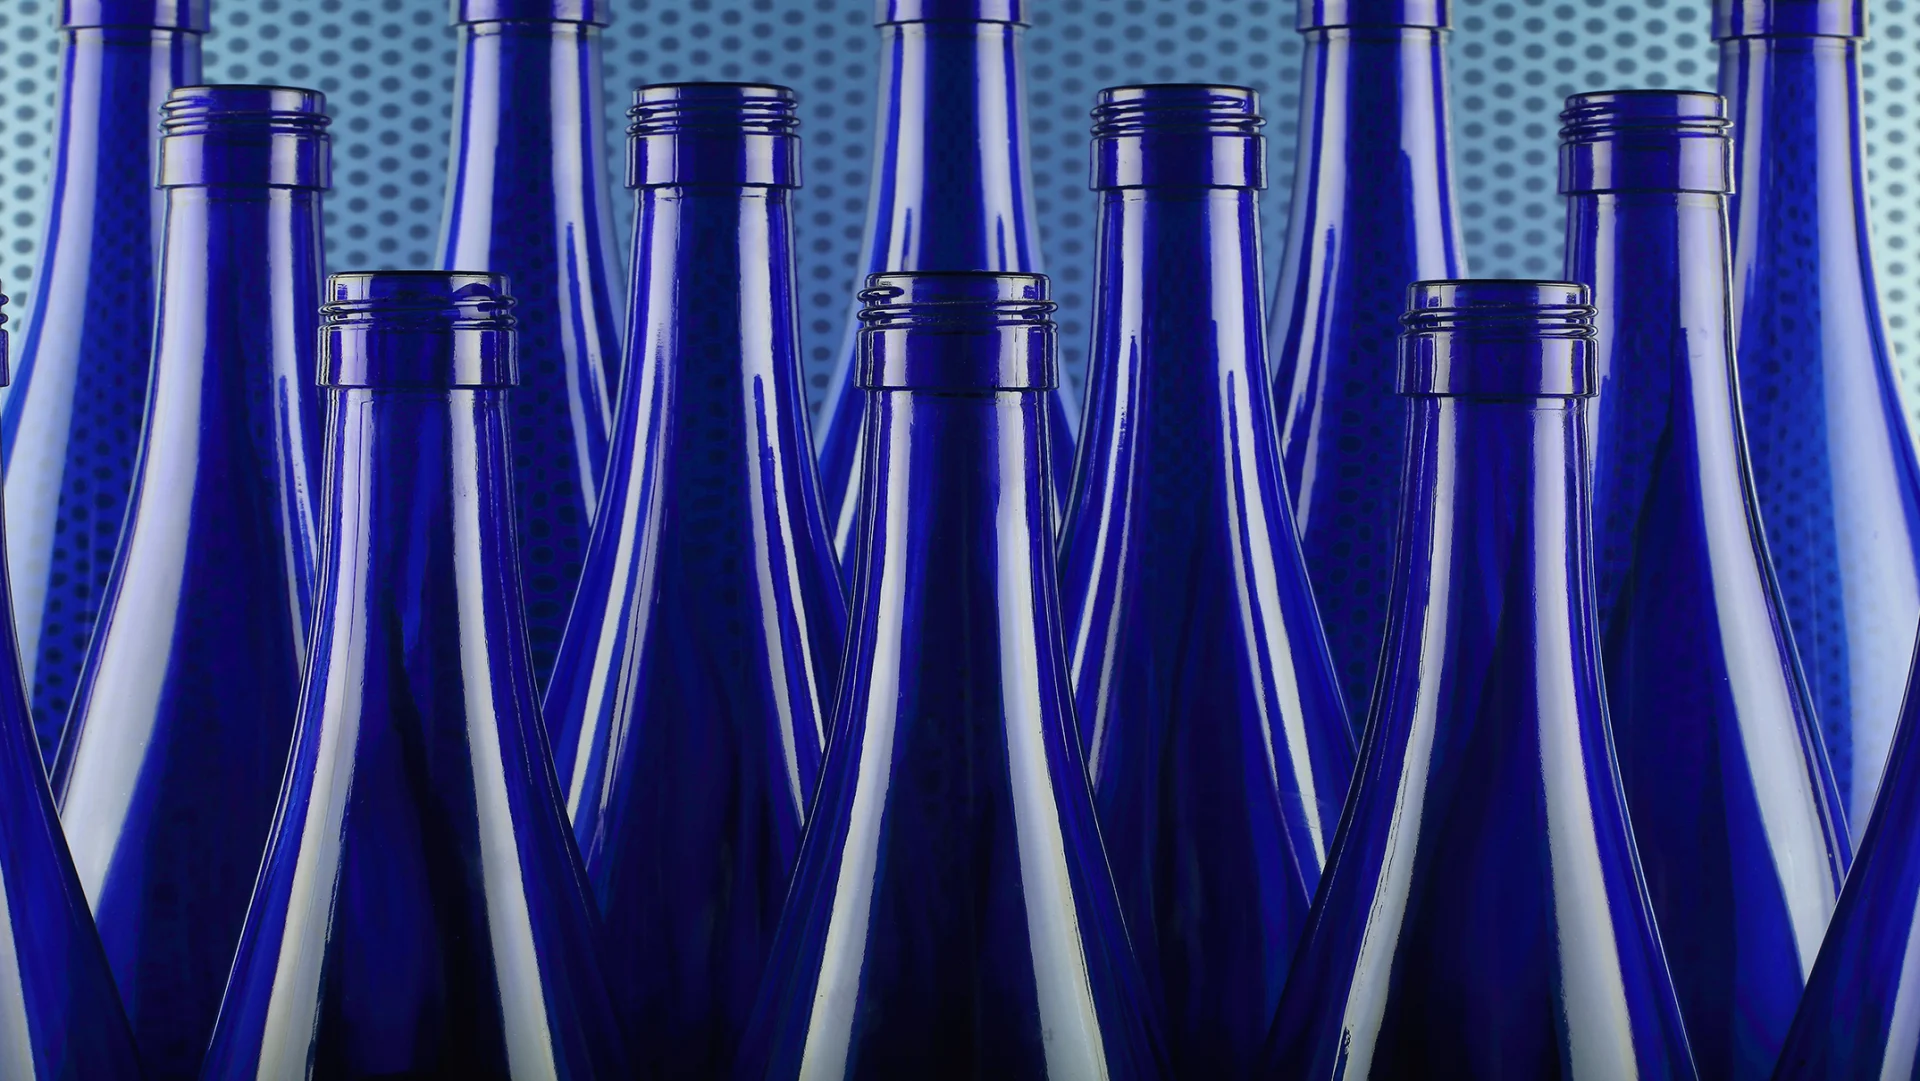 Des bouteilles en verre bleu sont serrées les unes contre les autres